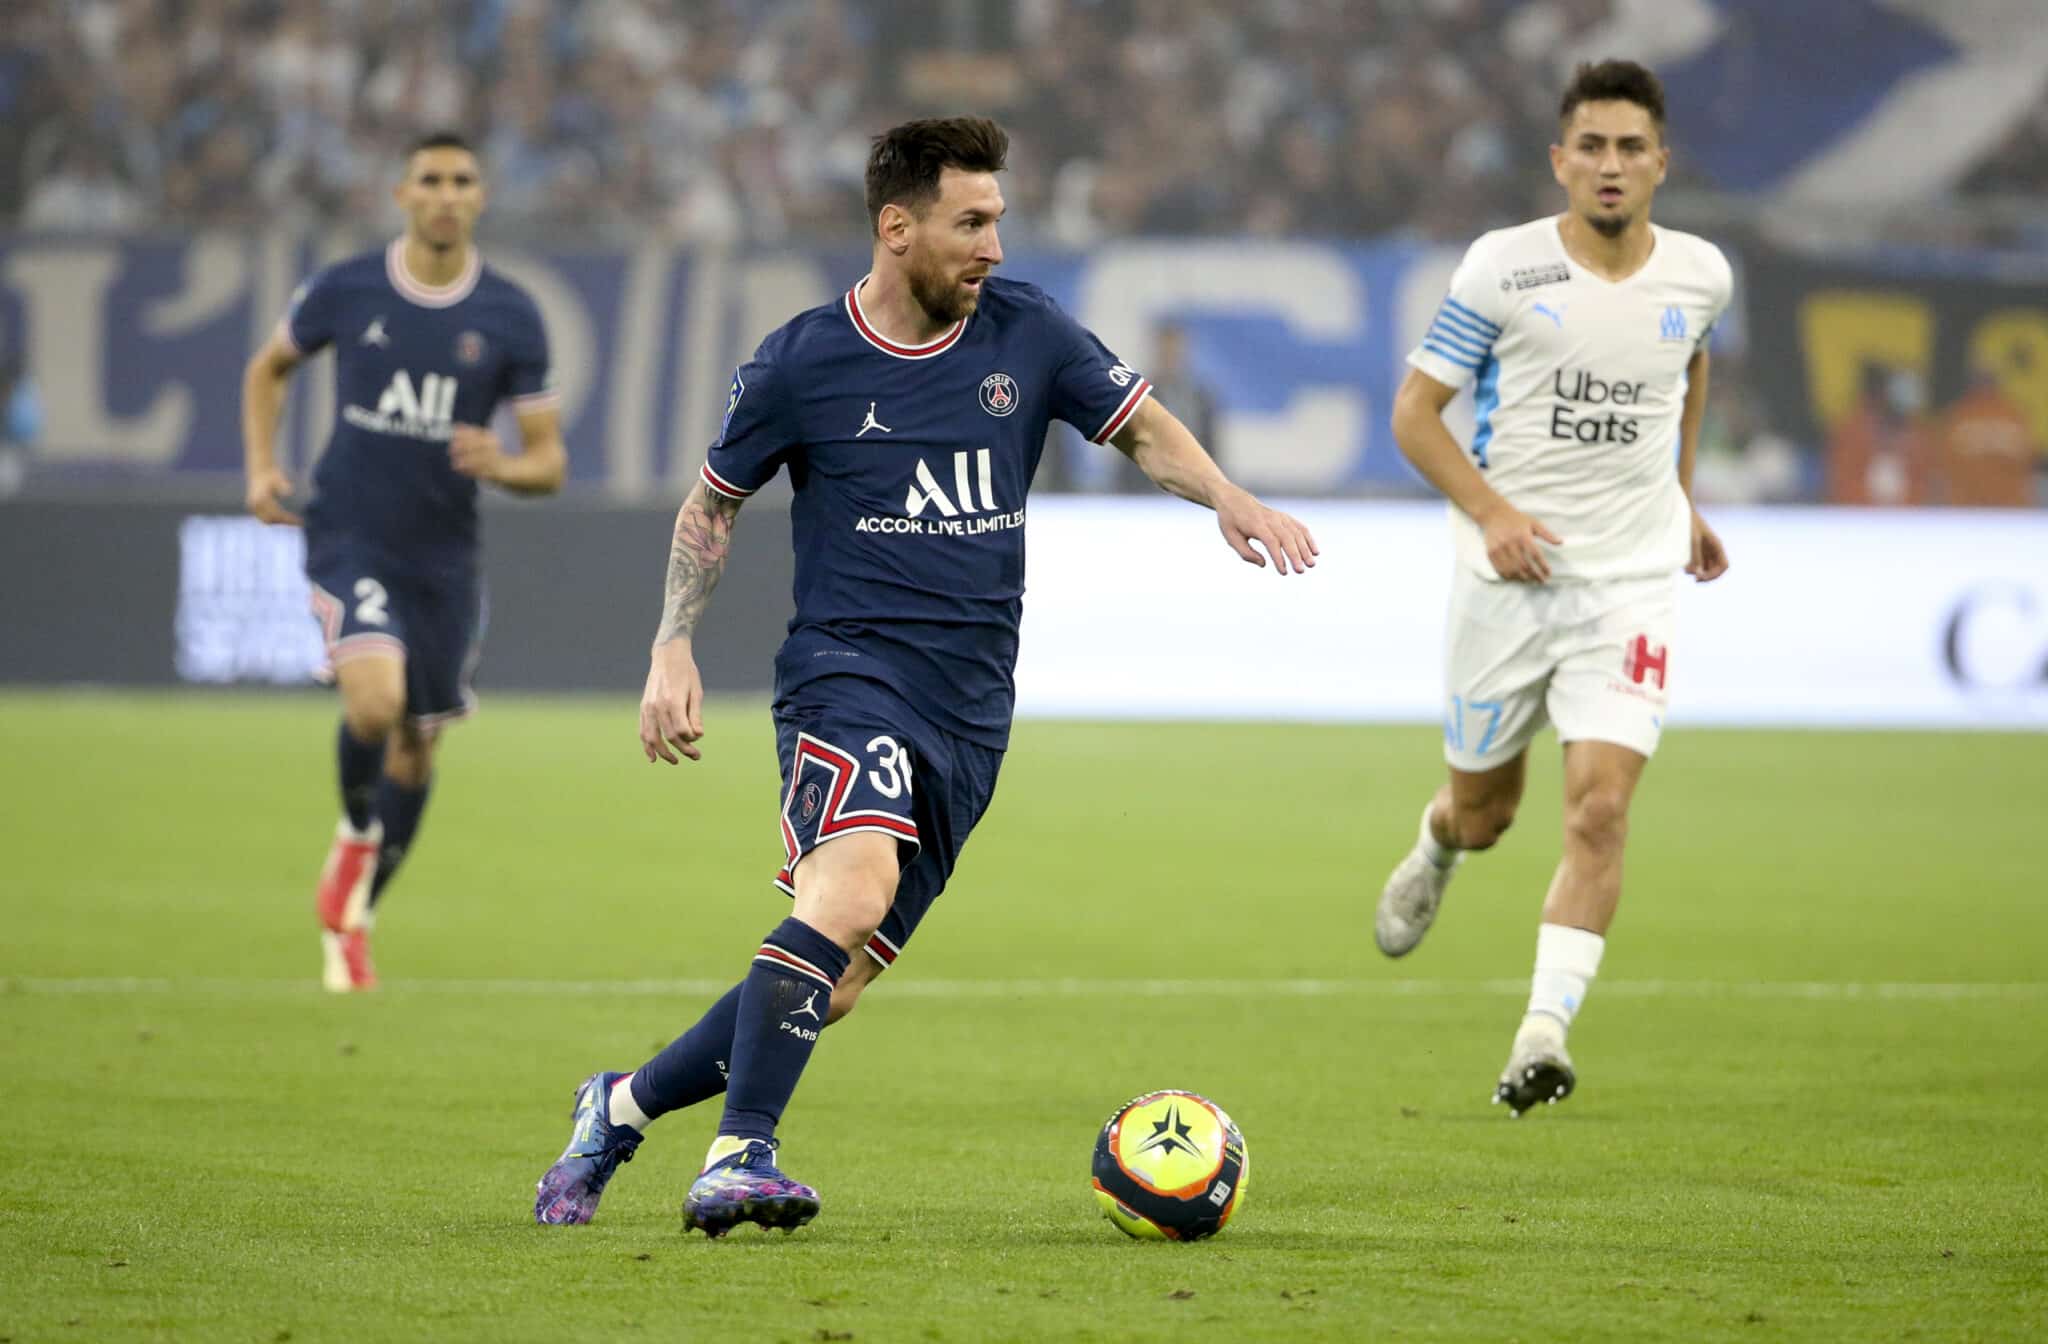 Leo Messi conduce el balón en un partido del Paris Saint Germain contra el Olympique de Marsella